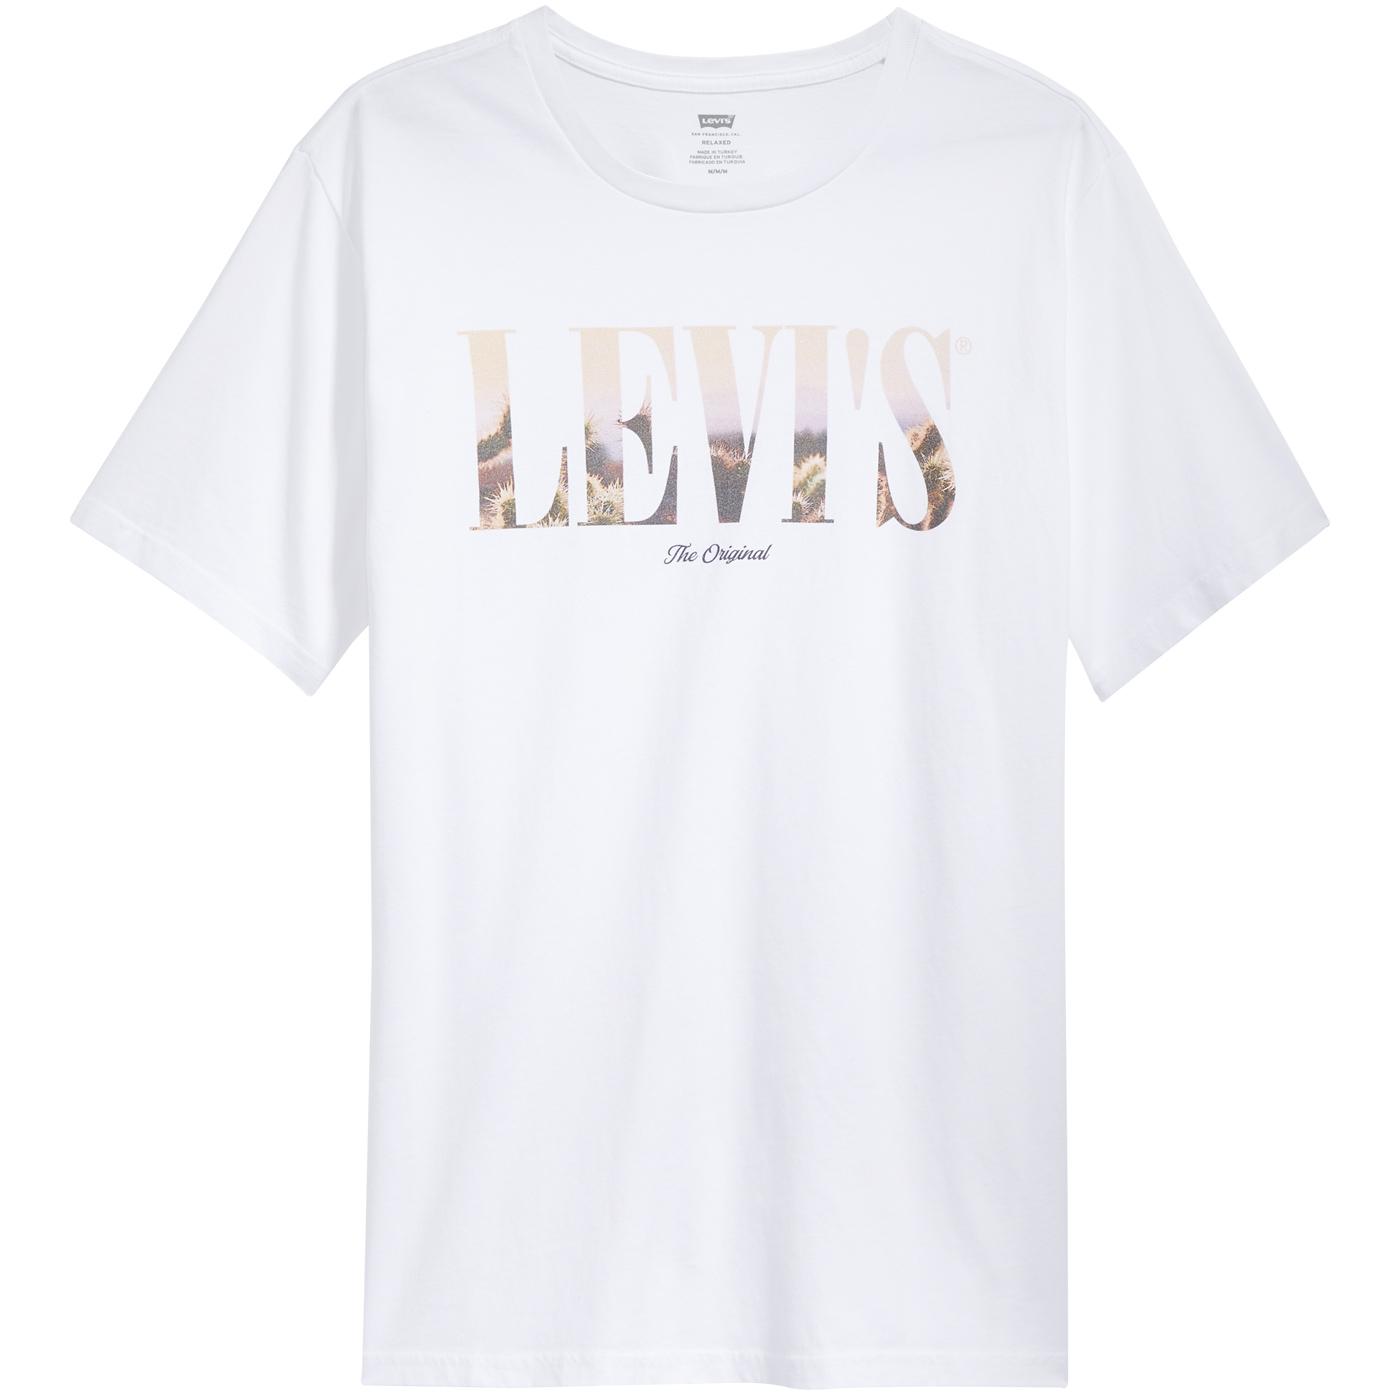 LEVIS Men's Relaxed Fit Desert Photo Logo T-Shirt